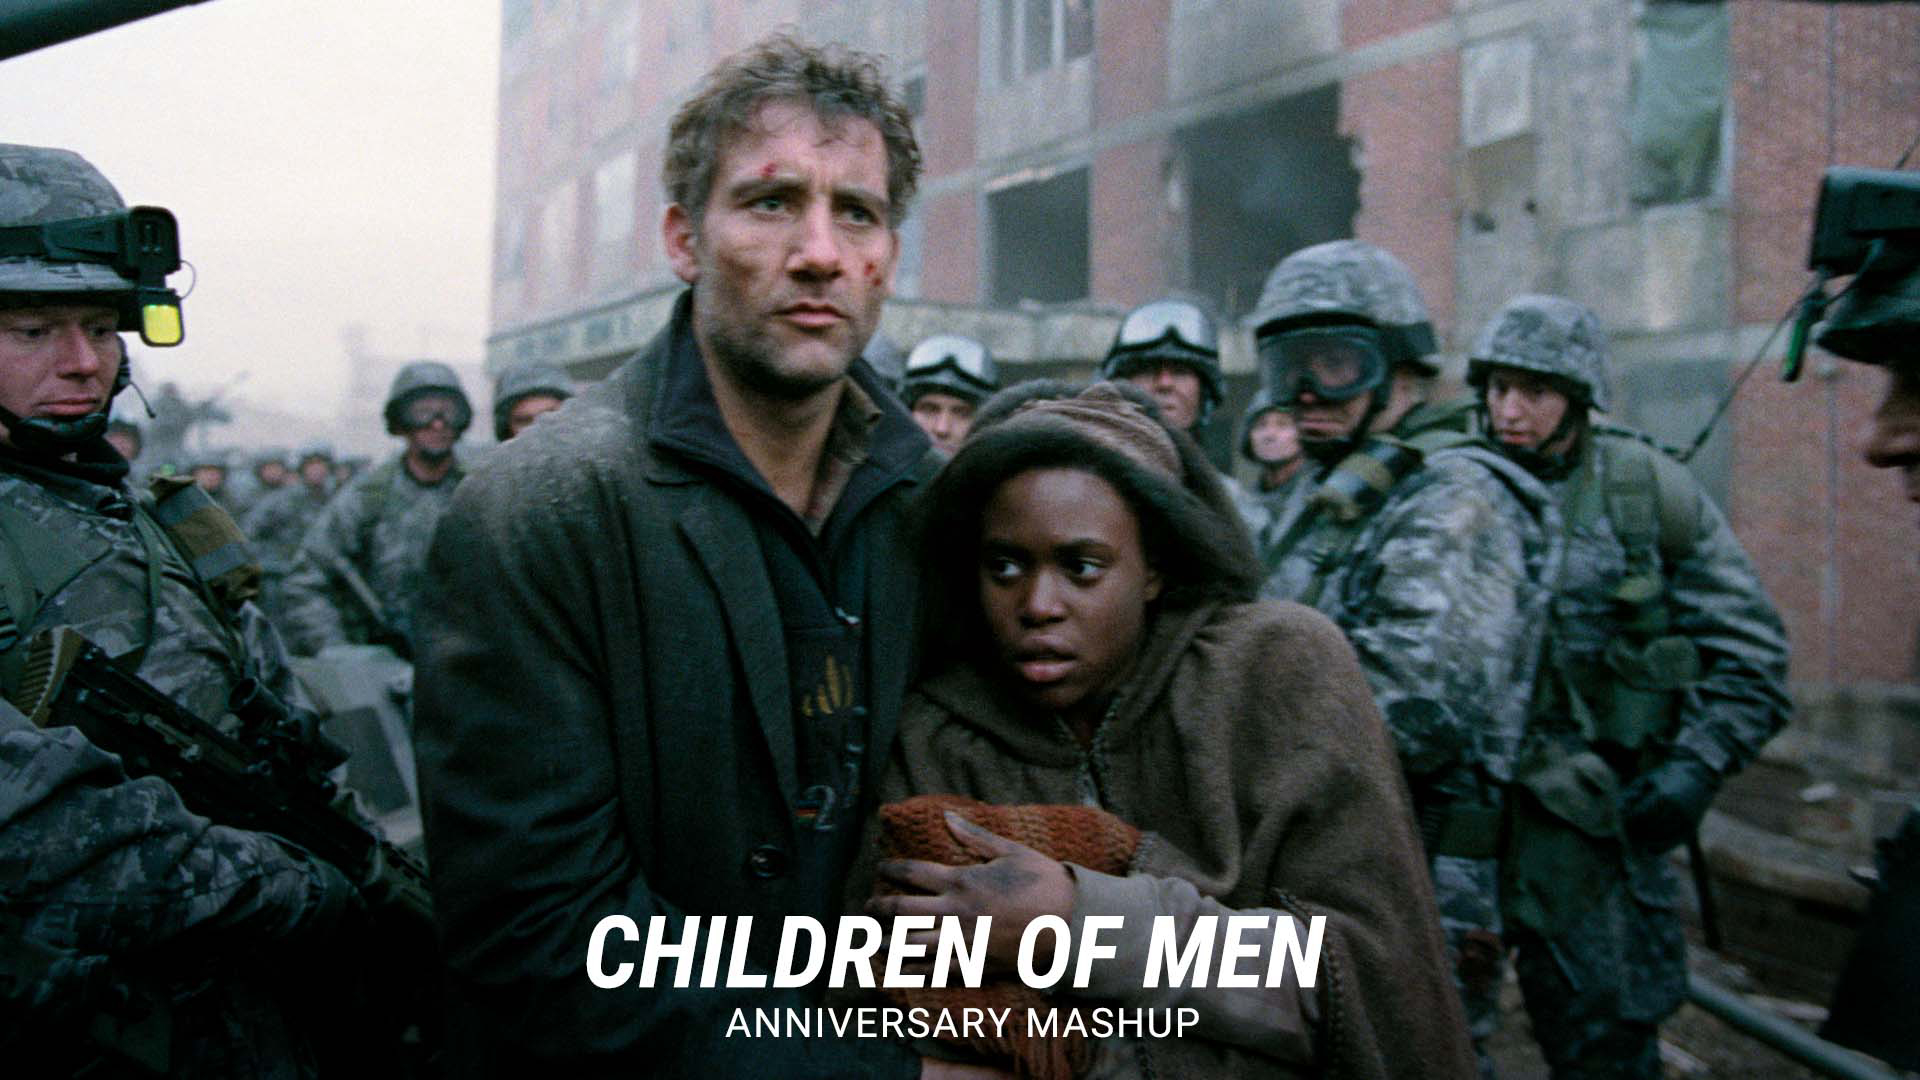 Children of Men - Children of Men (2006)